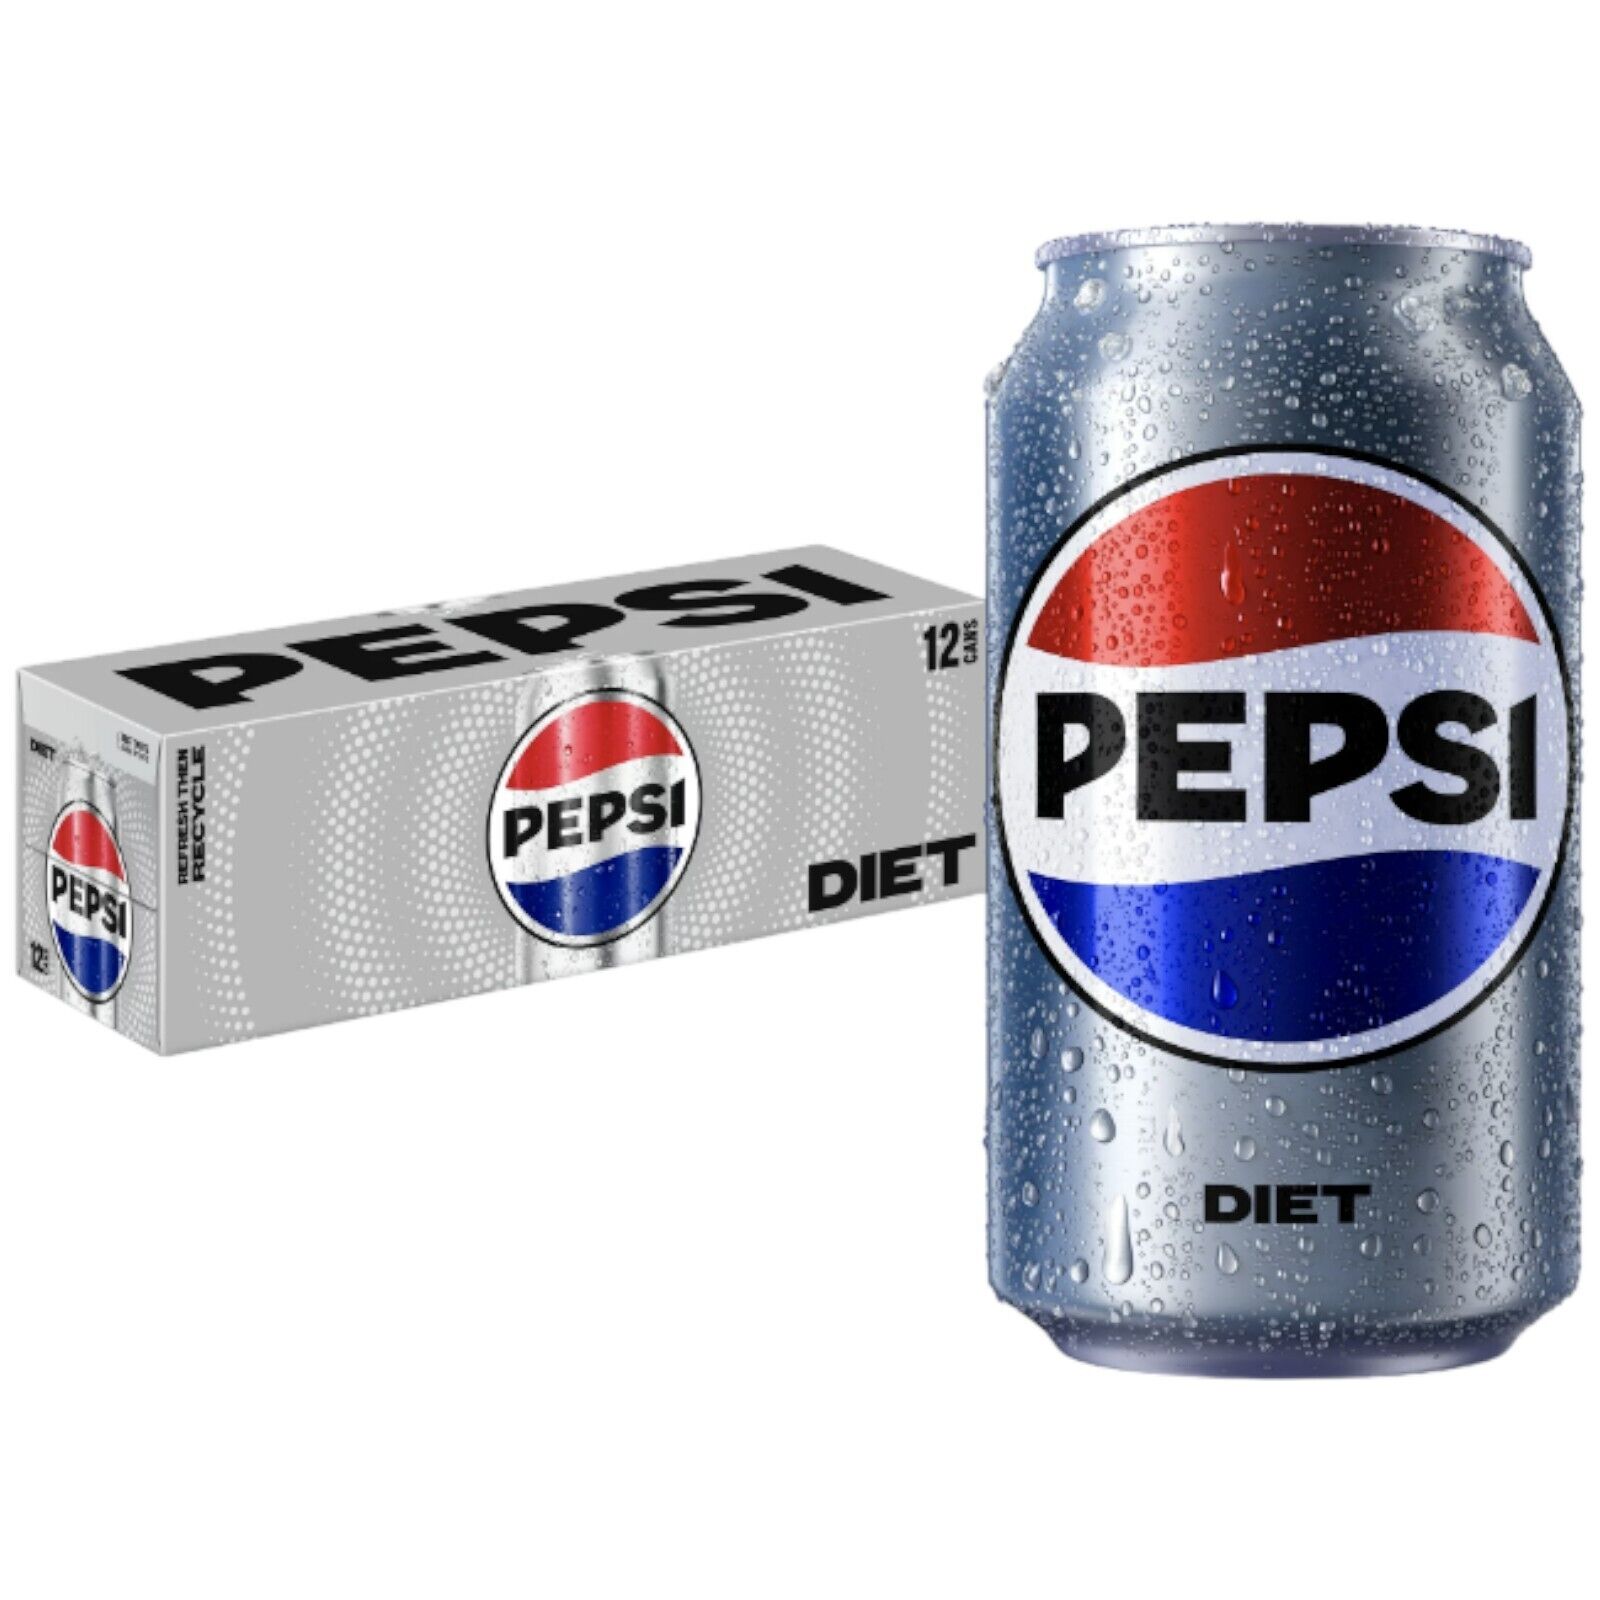 Pepsi Diet Cola Soda 12 Pack Soft Drinks Soda PepsiCo 12oz Soda Pack of 12 